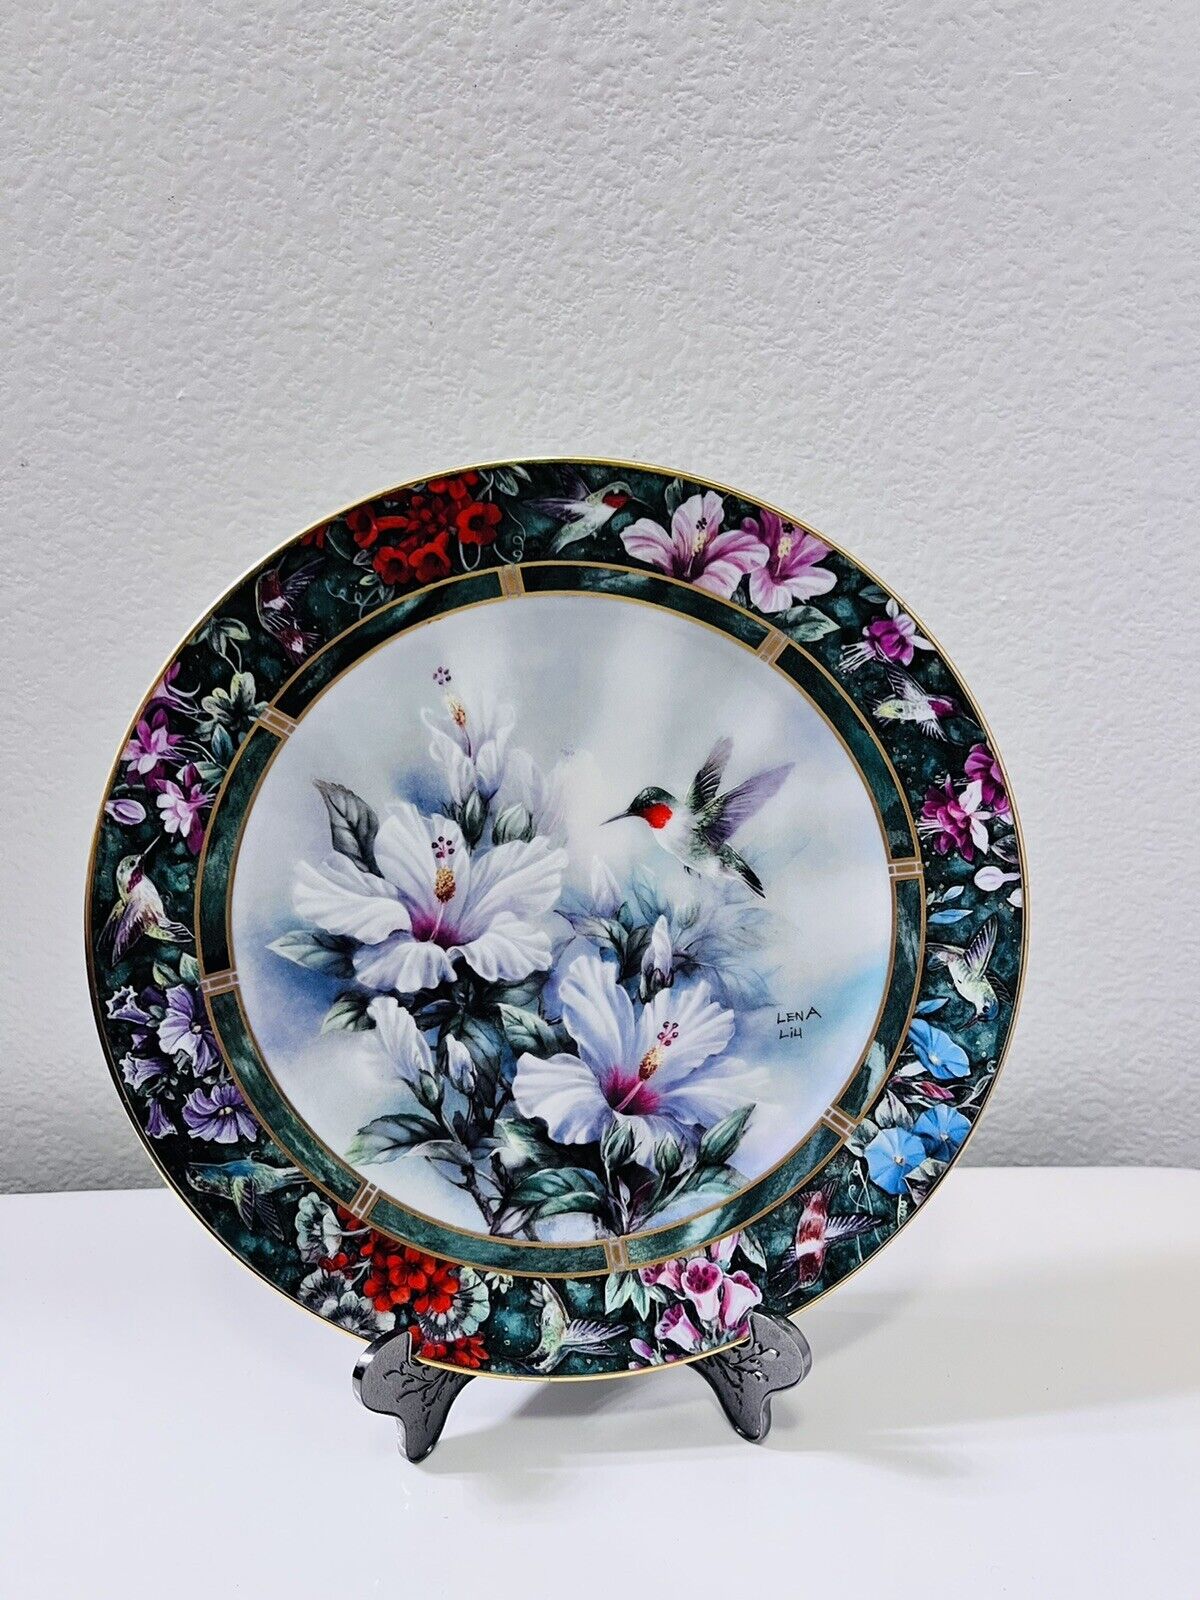 Vintage Lena Liu\'s Hummingbird Treasury Plate. The Ruby Throated Hummingbird